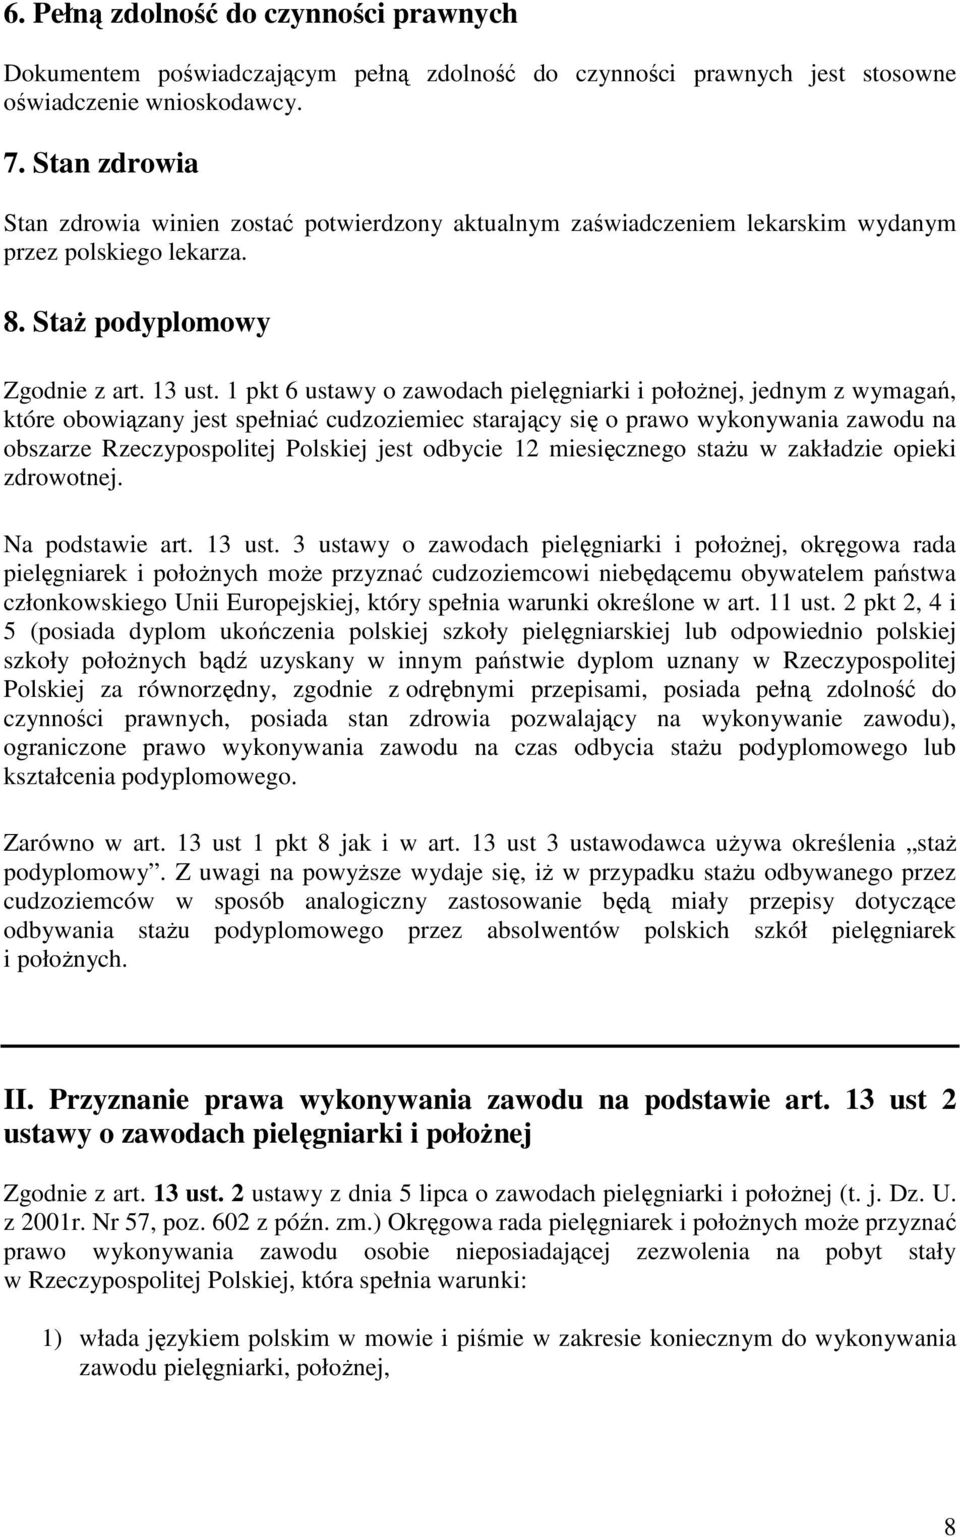 1 pkt 6 ustawy o zawodach pielęgniarki i połoŝnej, jednym z wymagań, które obowiązany jest spełniać cudzoziemiec starający się o prawo wykonywania zawodu na obszarze Rzeczypospolitej Polskiej jest